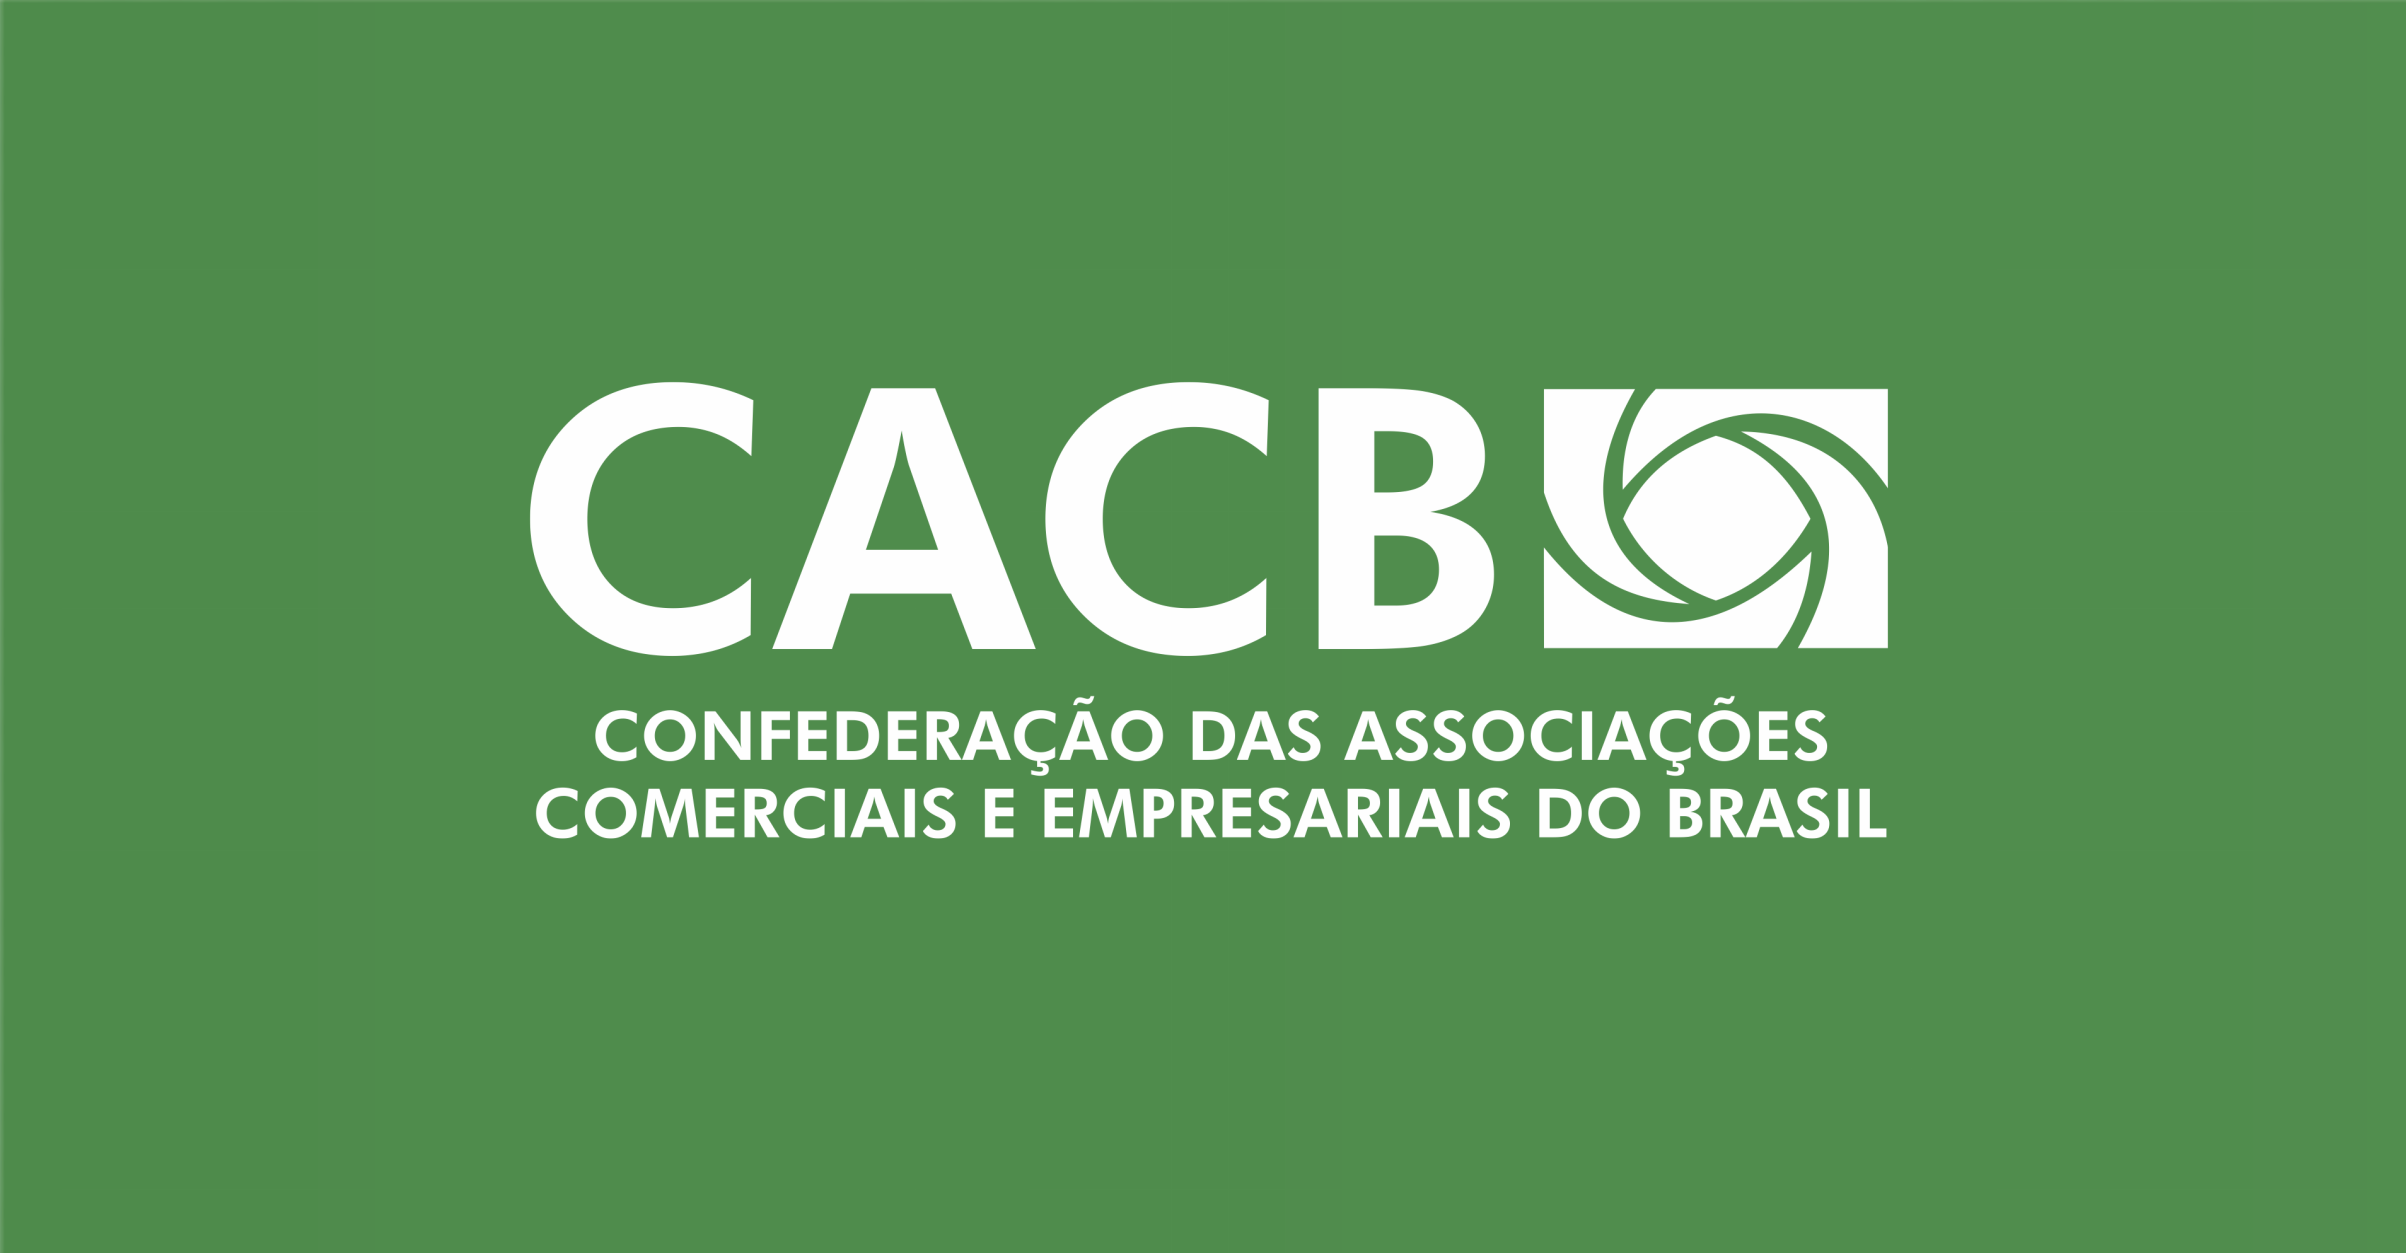 CACB confederação das associações comerciais e empresariais do Brasil - ACICG.